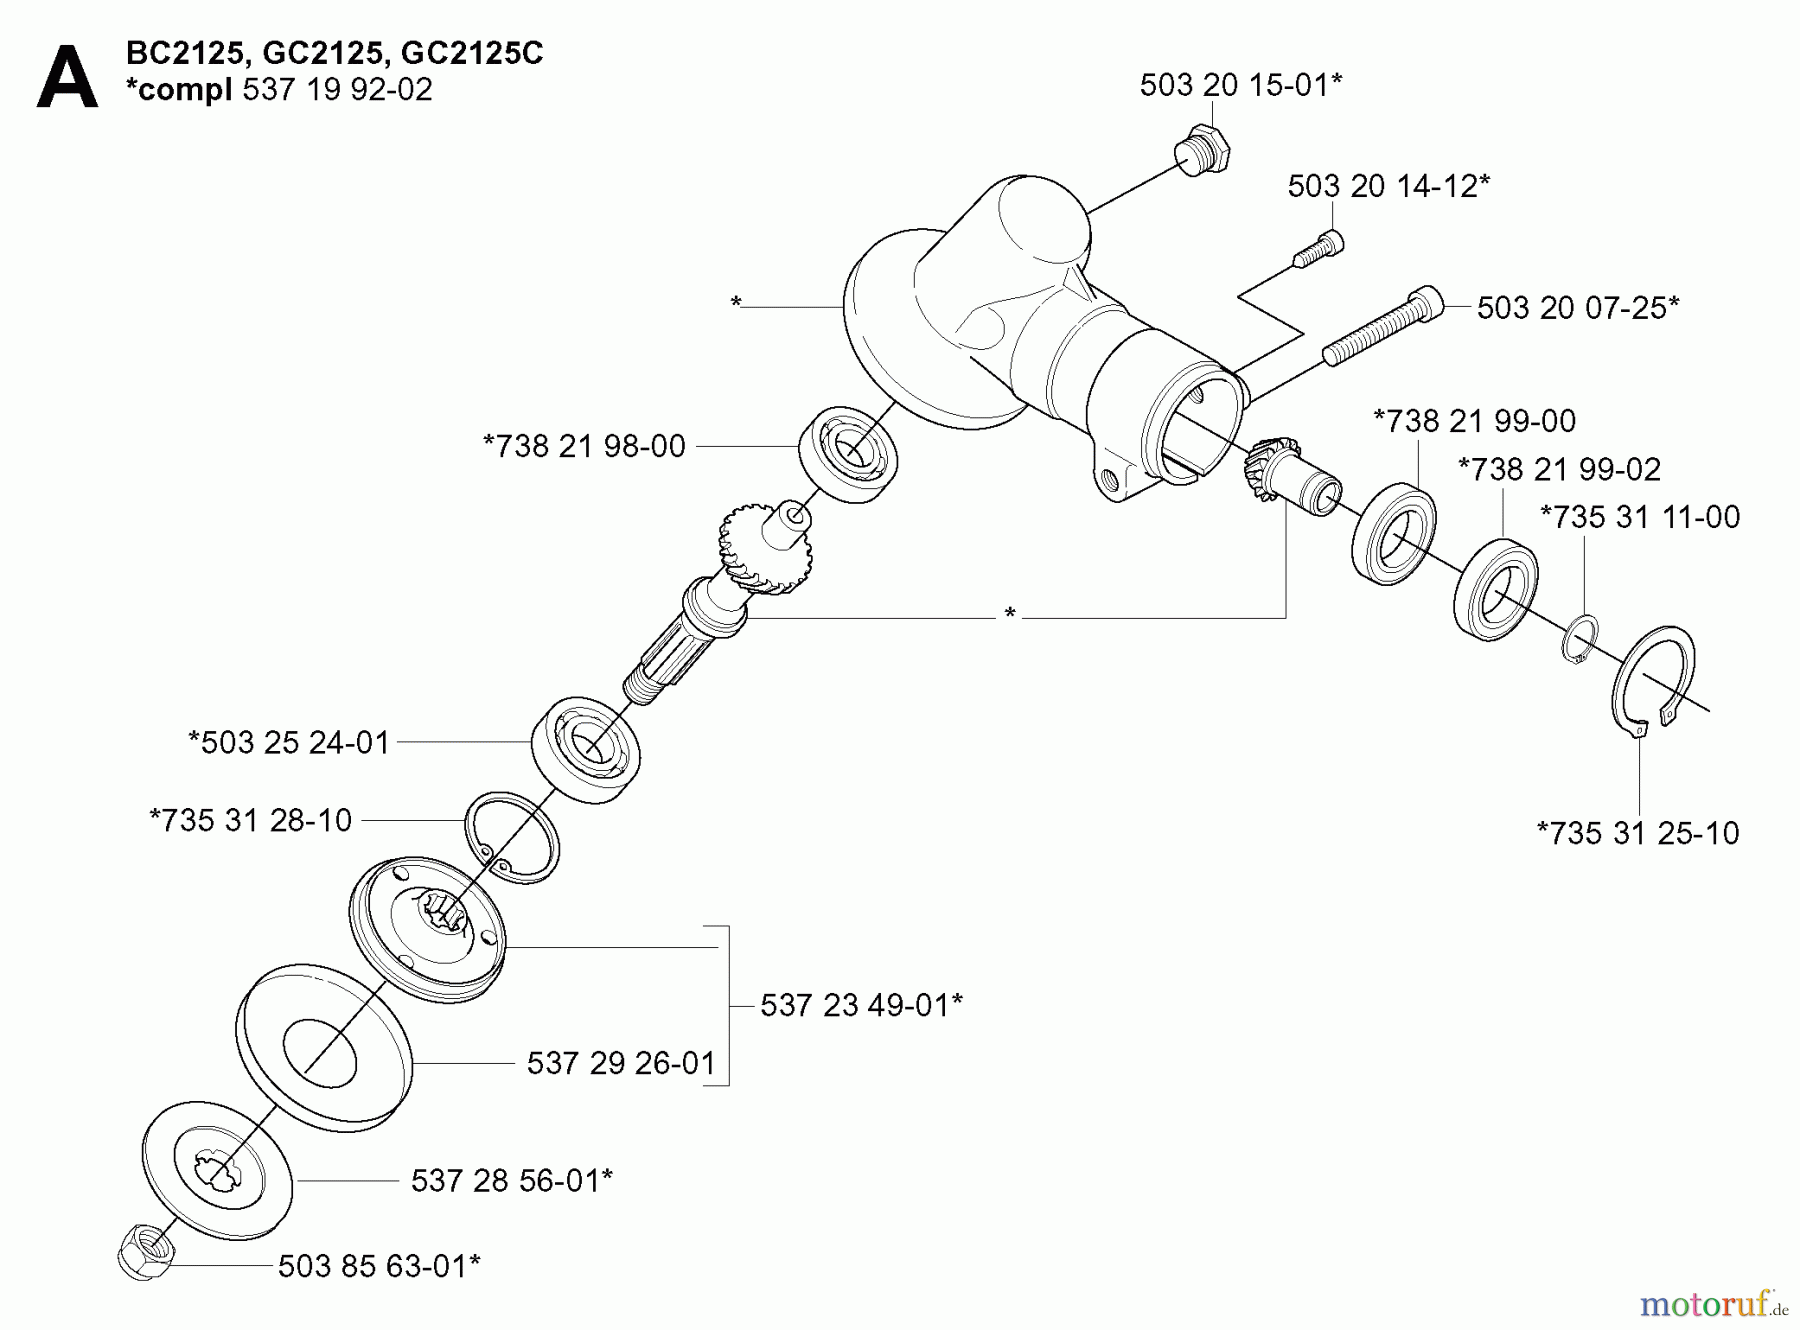  Jonsered Motorsensen, Trimmer GC2125 - Jonsered String/Brush Trimmer (2005-01) BEVEL GEAR